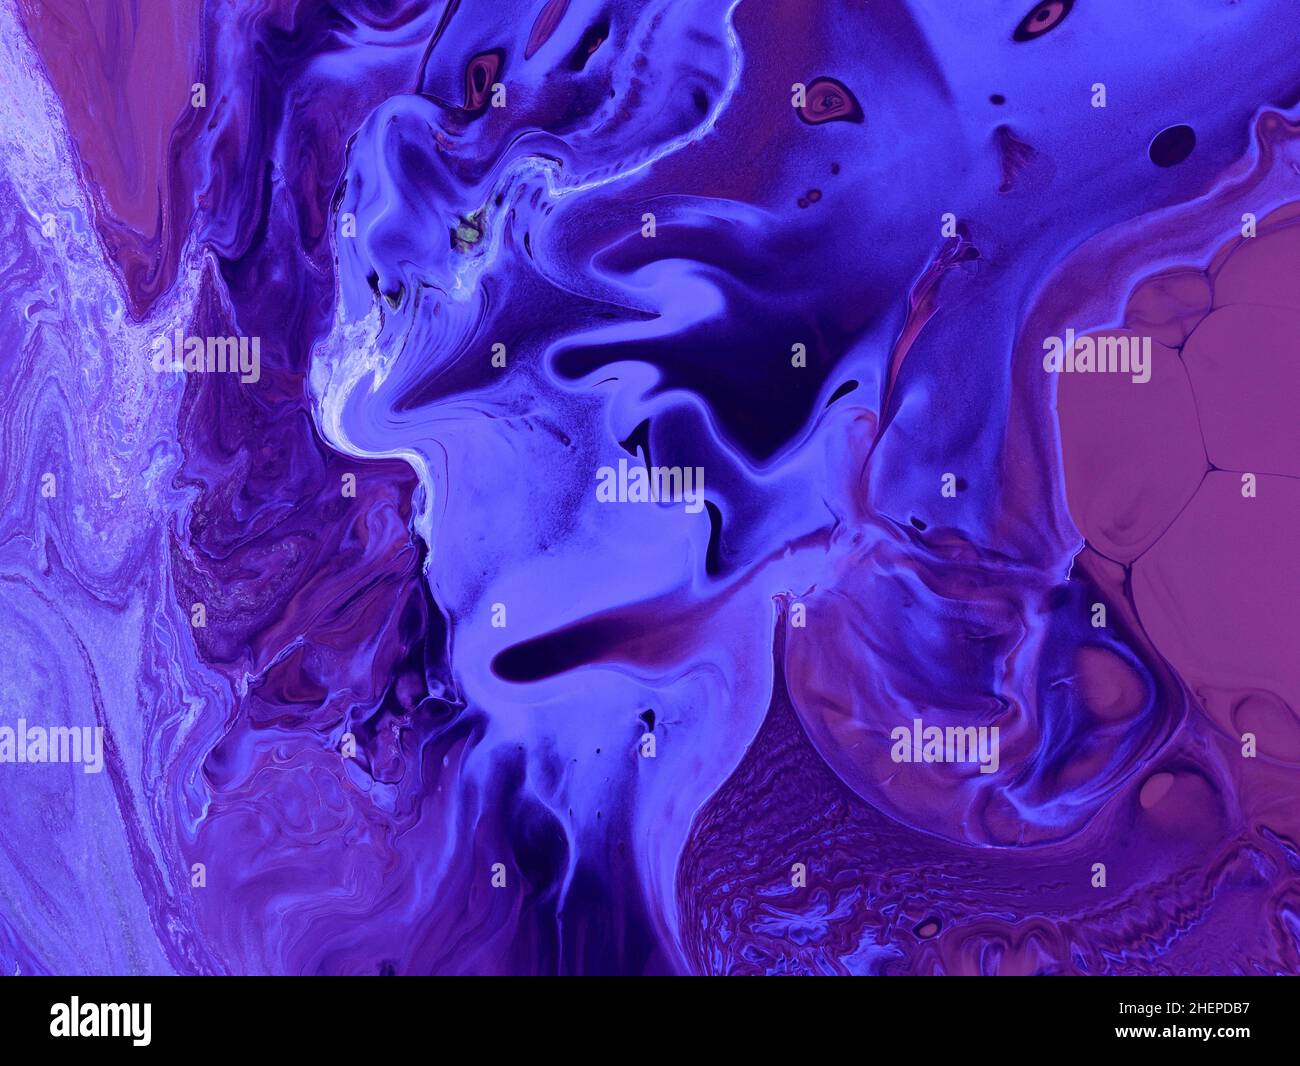 Abstrait peinture d'art créative en violet et violet, texture acrylique peinte à la main.Illustration fractale pour un design graphique créatif.Art moderne con Banque D'Images